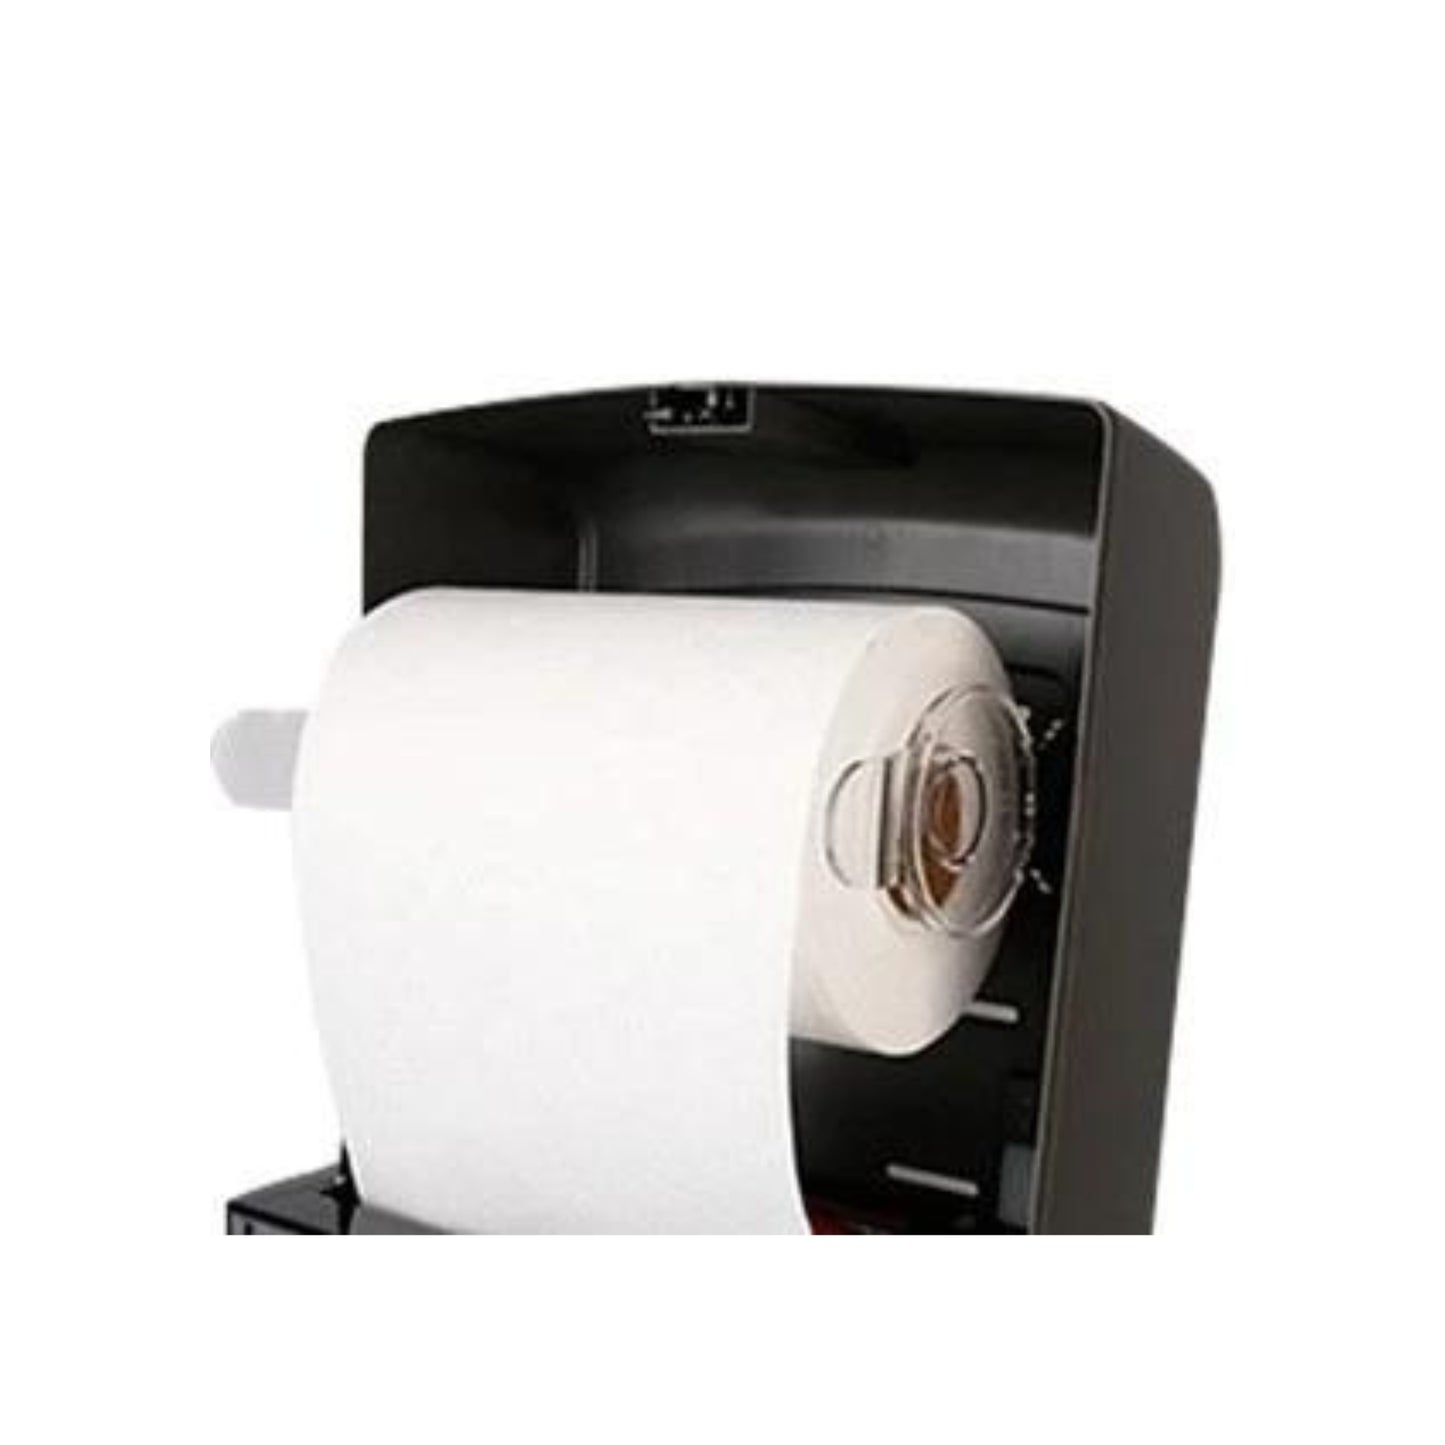 Auto-Cut Paper Towel Dispenser - Black